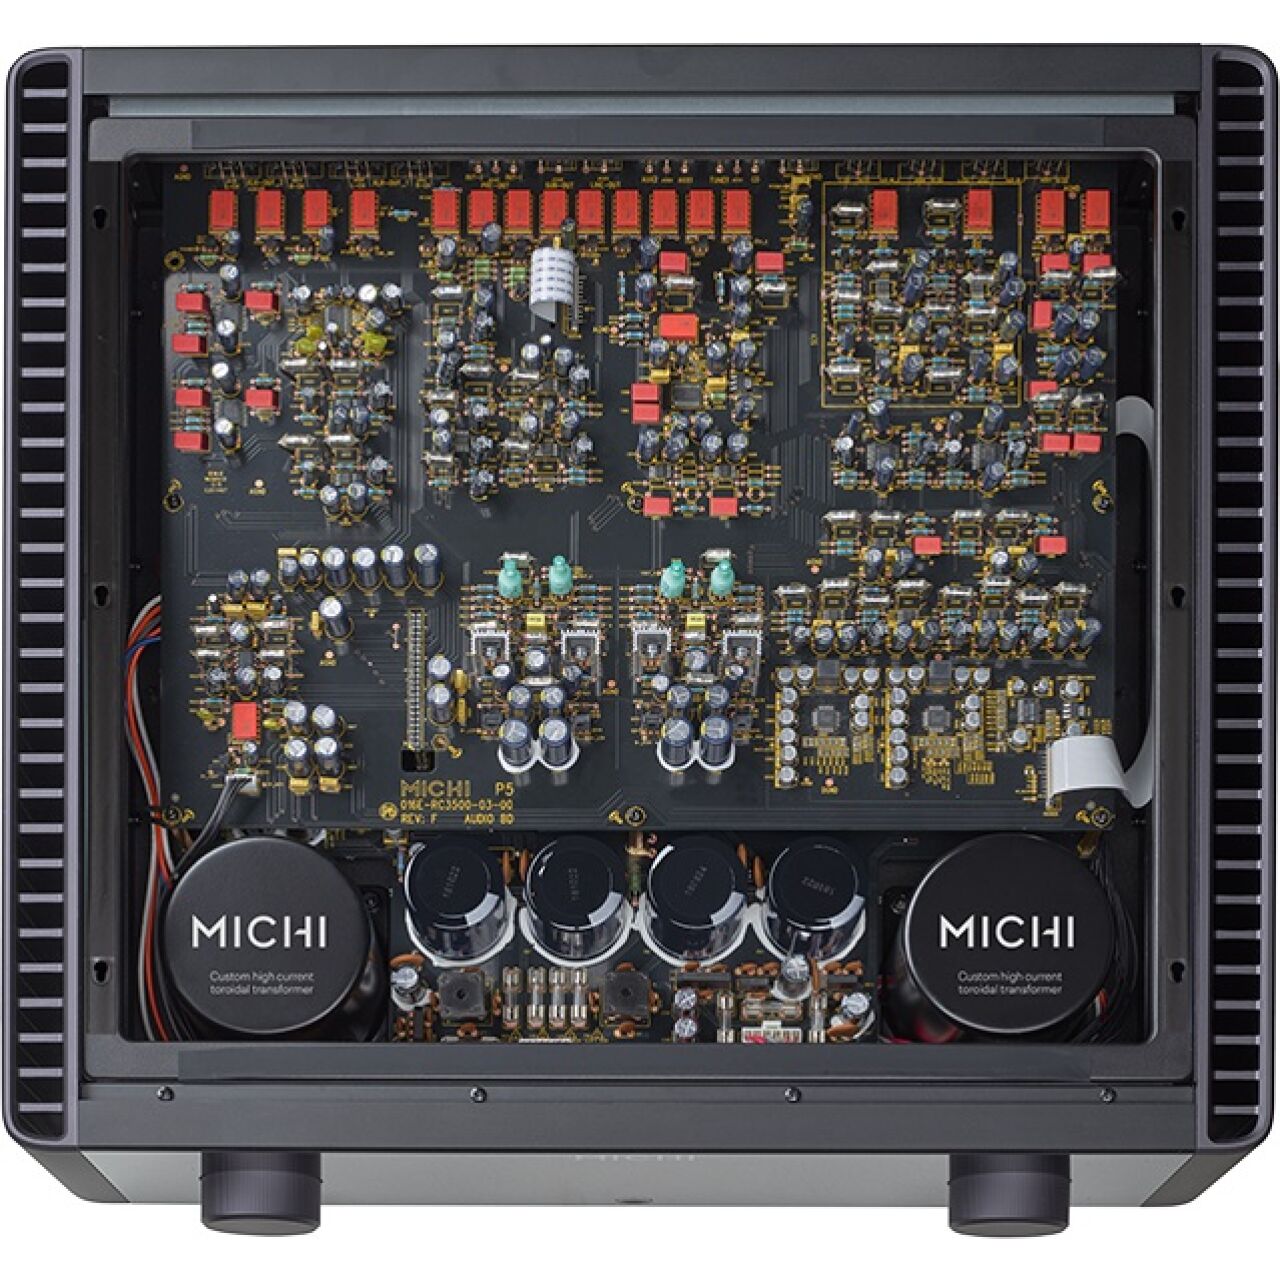 Rotel Michi P5 MK II Stereo Pre-Amplifier